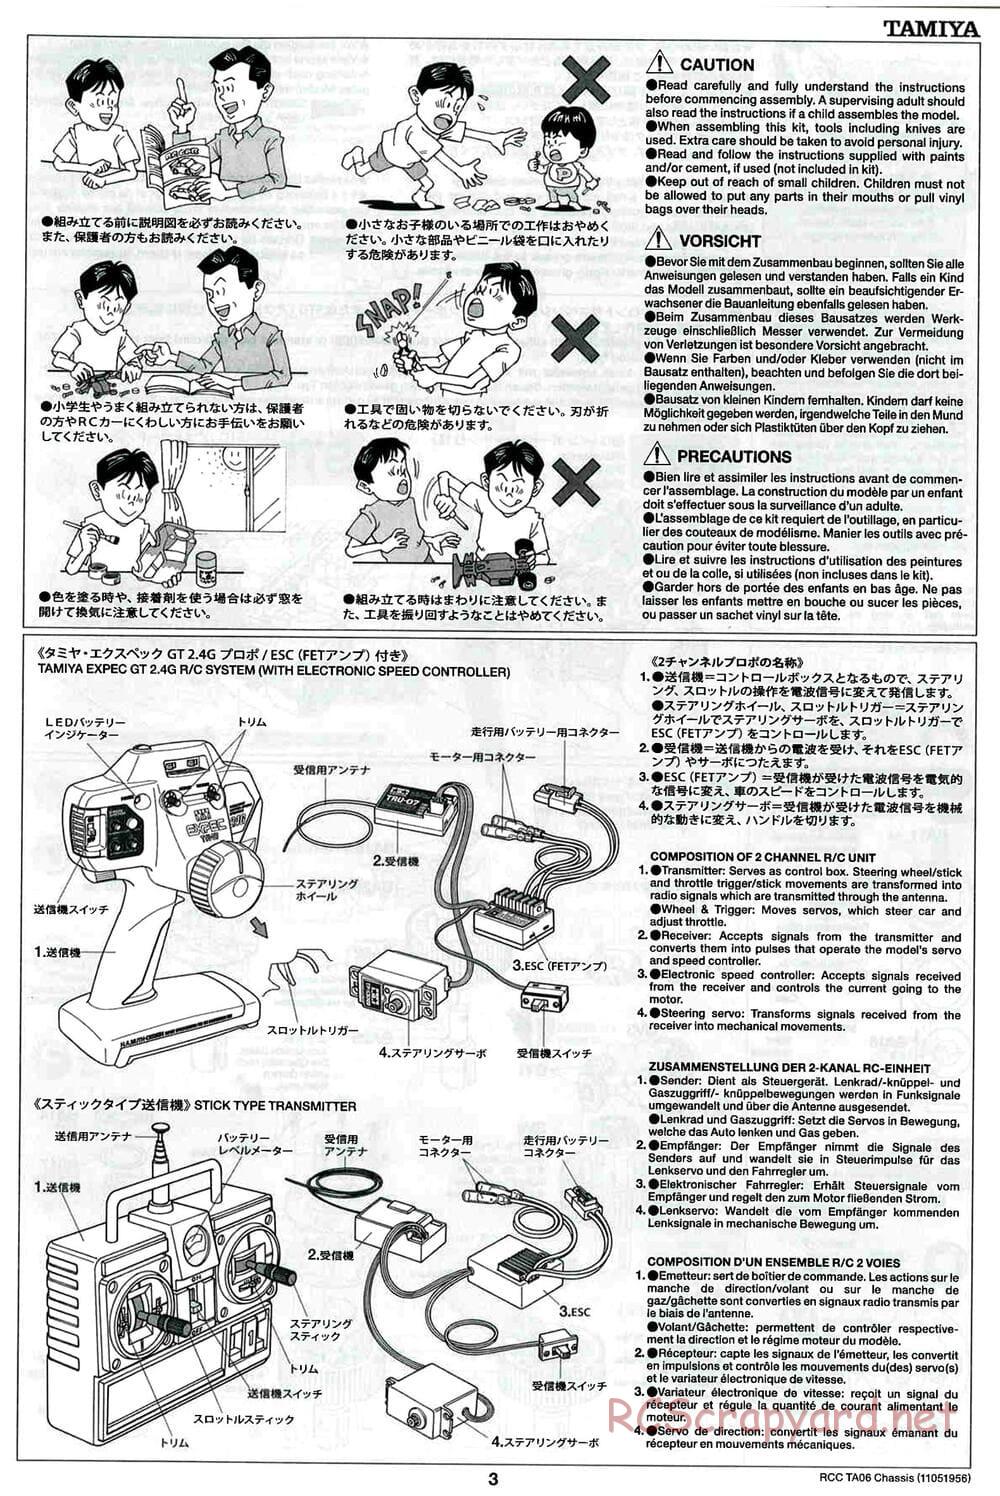 Tamiya - TA06 Chassis - Manual - Page 3